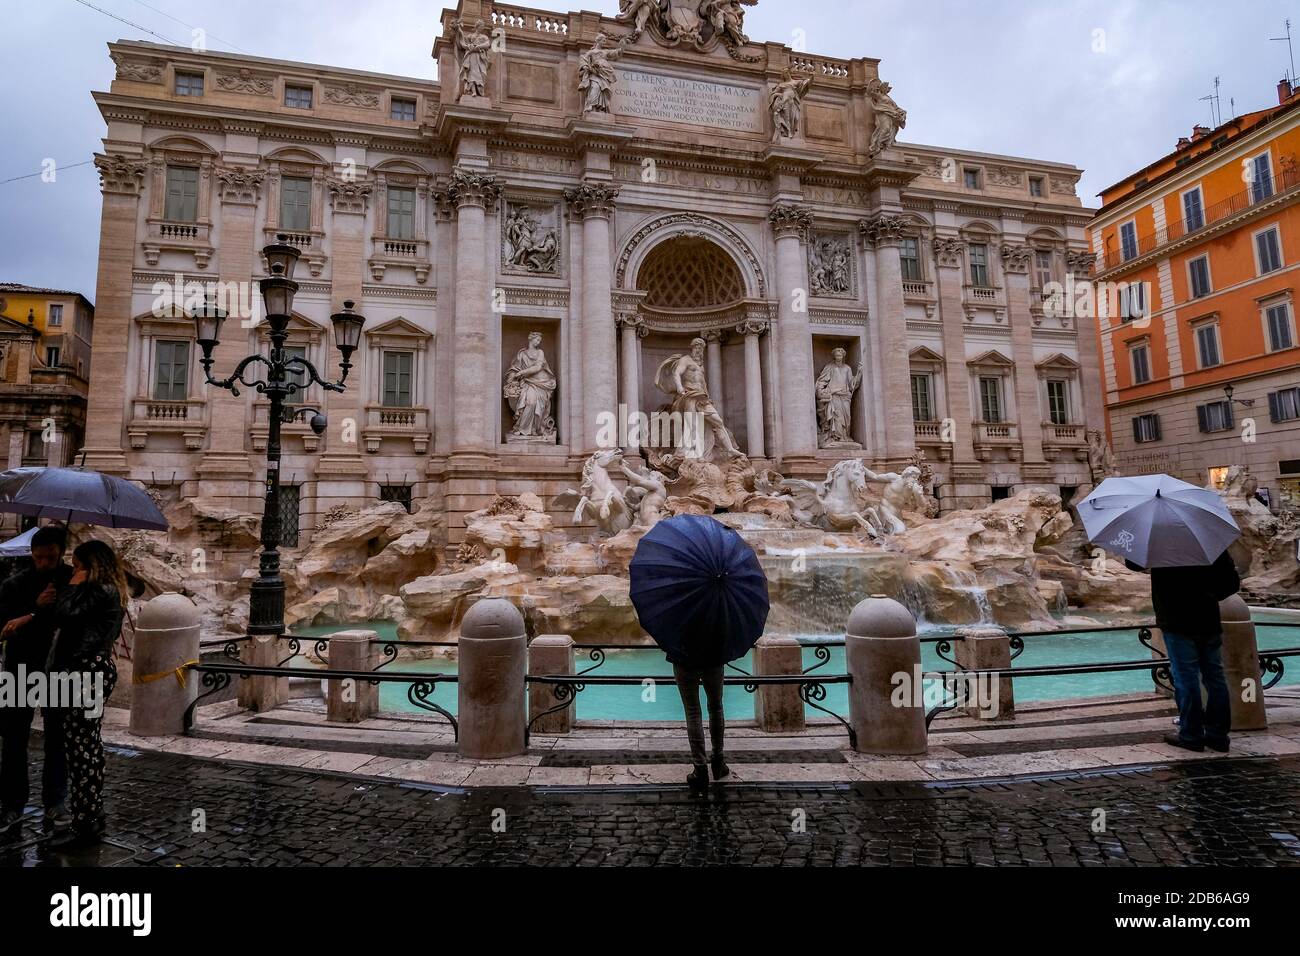 Fontana di Trevi - magnifique et emblématique Fontaine d'eau - vide, jour de la pluie - Rome, Italie Banque D'Images